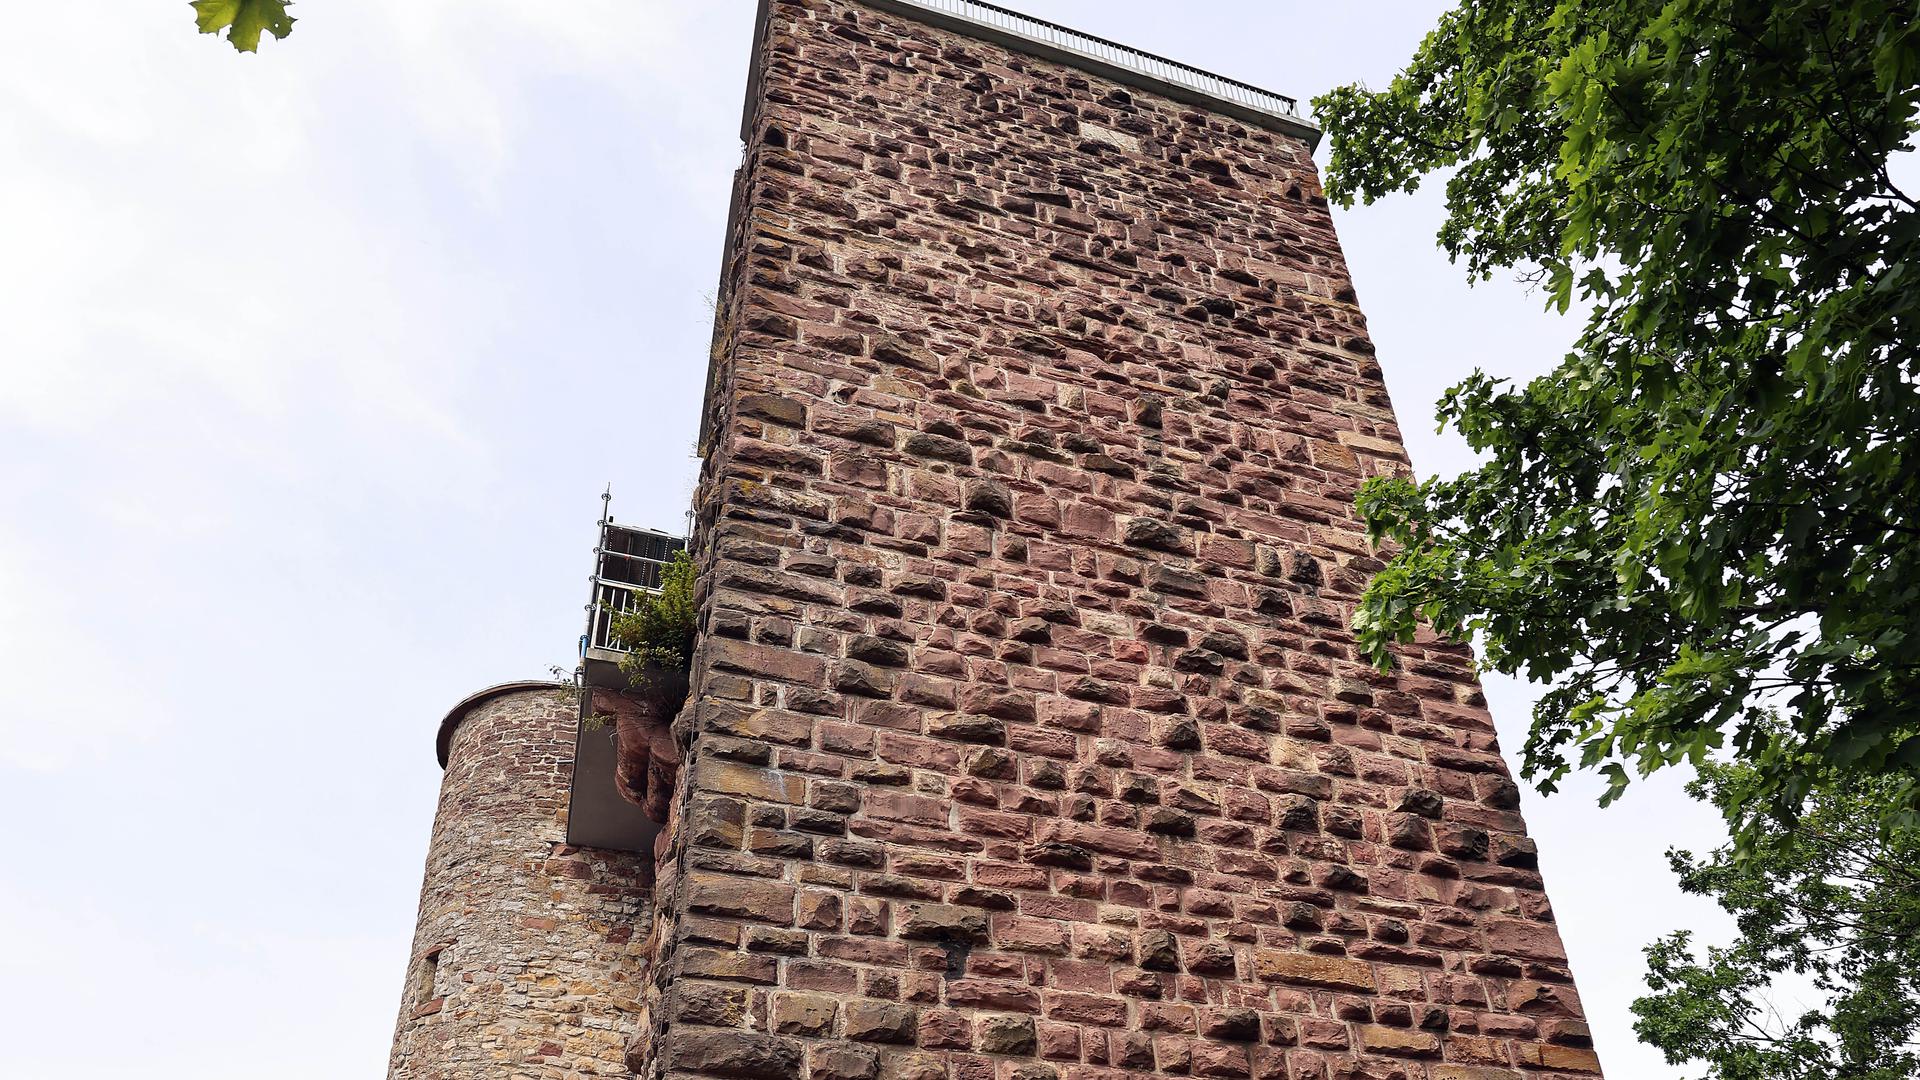 Auch am 2. Juni 2022 ist der Aufgang auf den Turm auf dem Turmberg in Durlach weiter gesperrt.